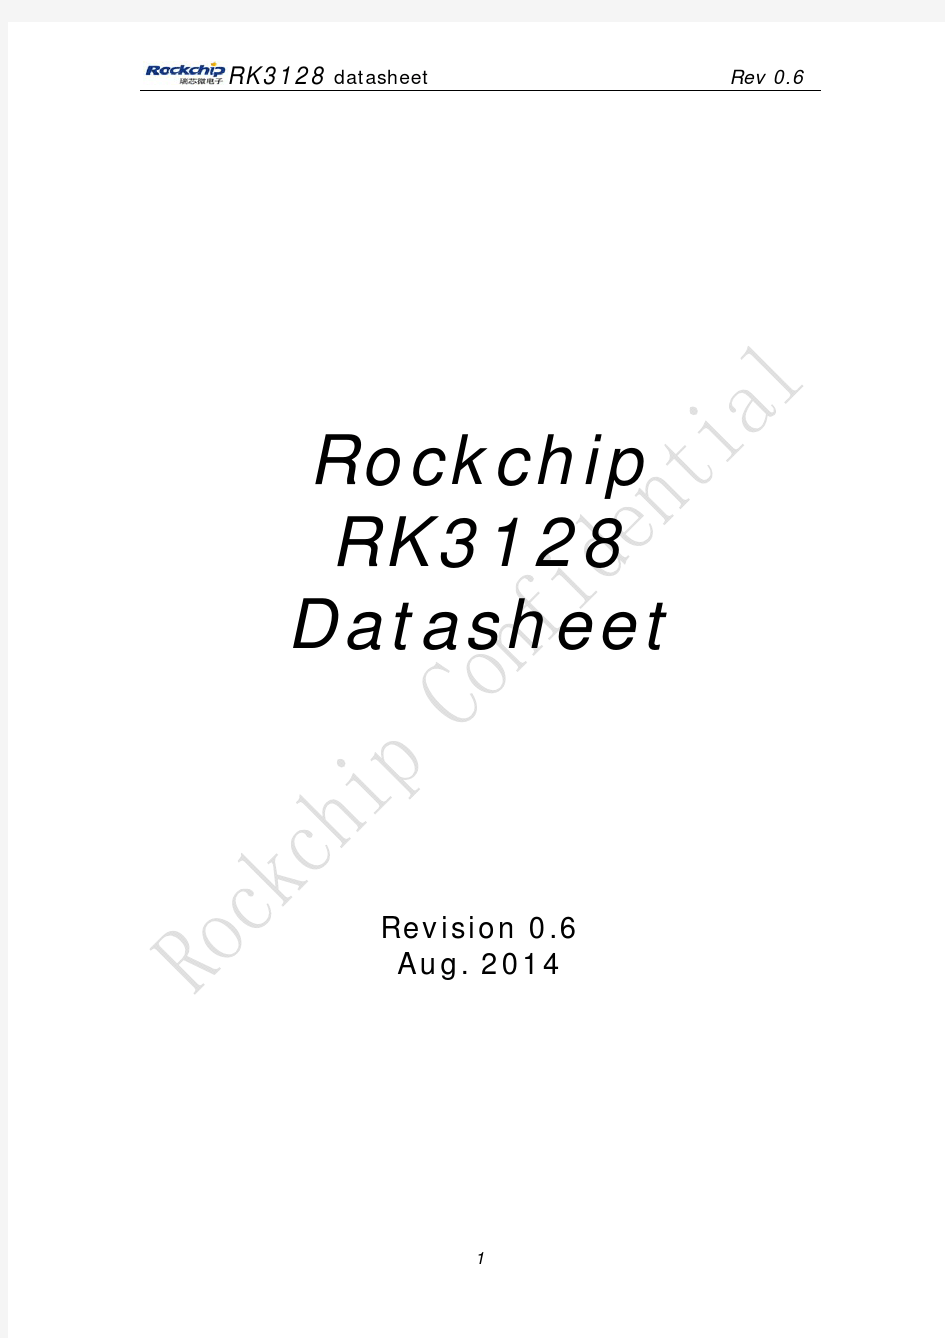 RK3128 Datasheet V0.6_20140815